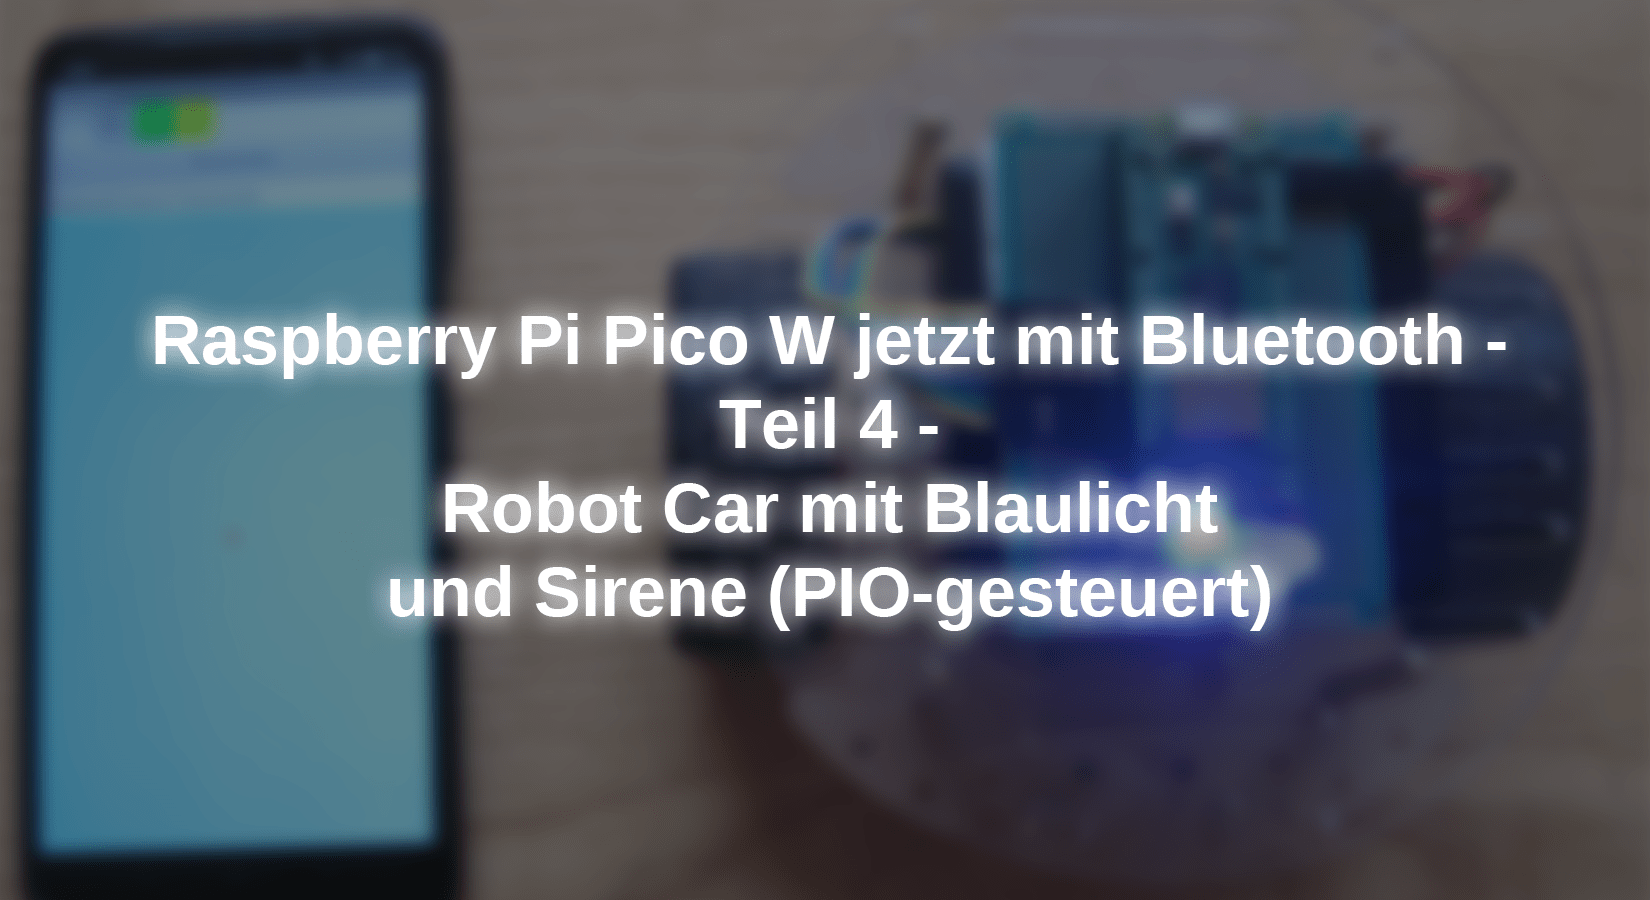 Raspberry Pi Pico W jetzt mit Bluetooth - Teil 4 - Robot Car mit Blaulicht und Sirene (PIO-gesteuert) - AZ-Delivery